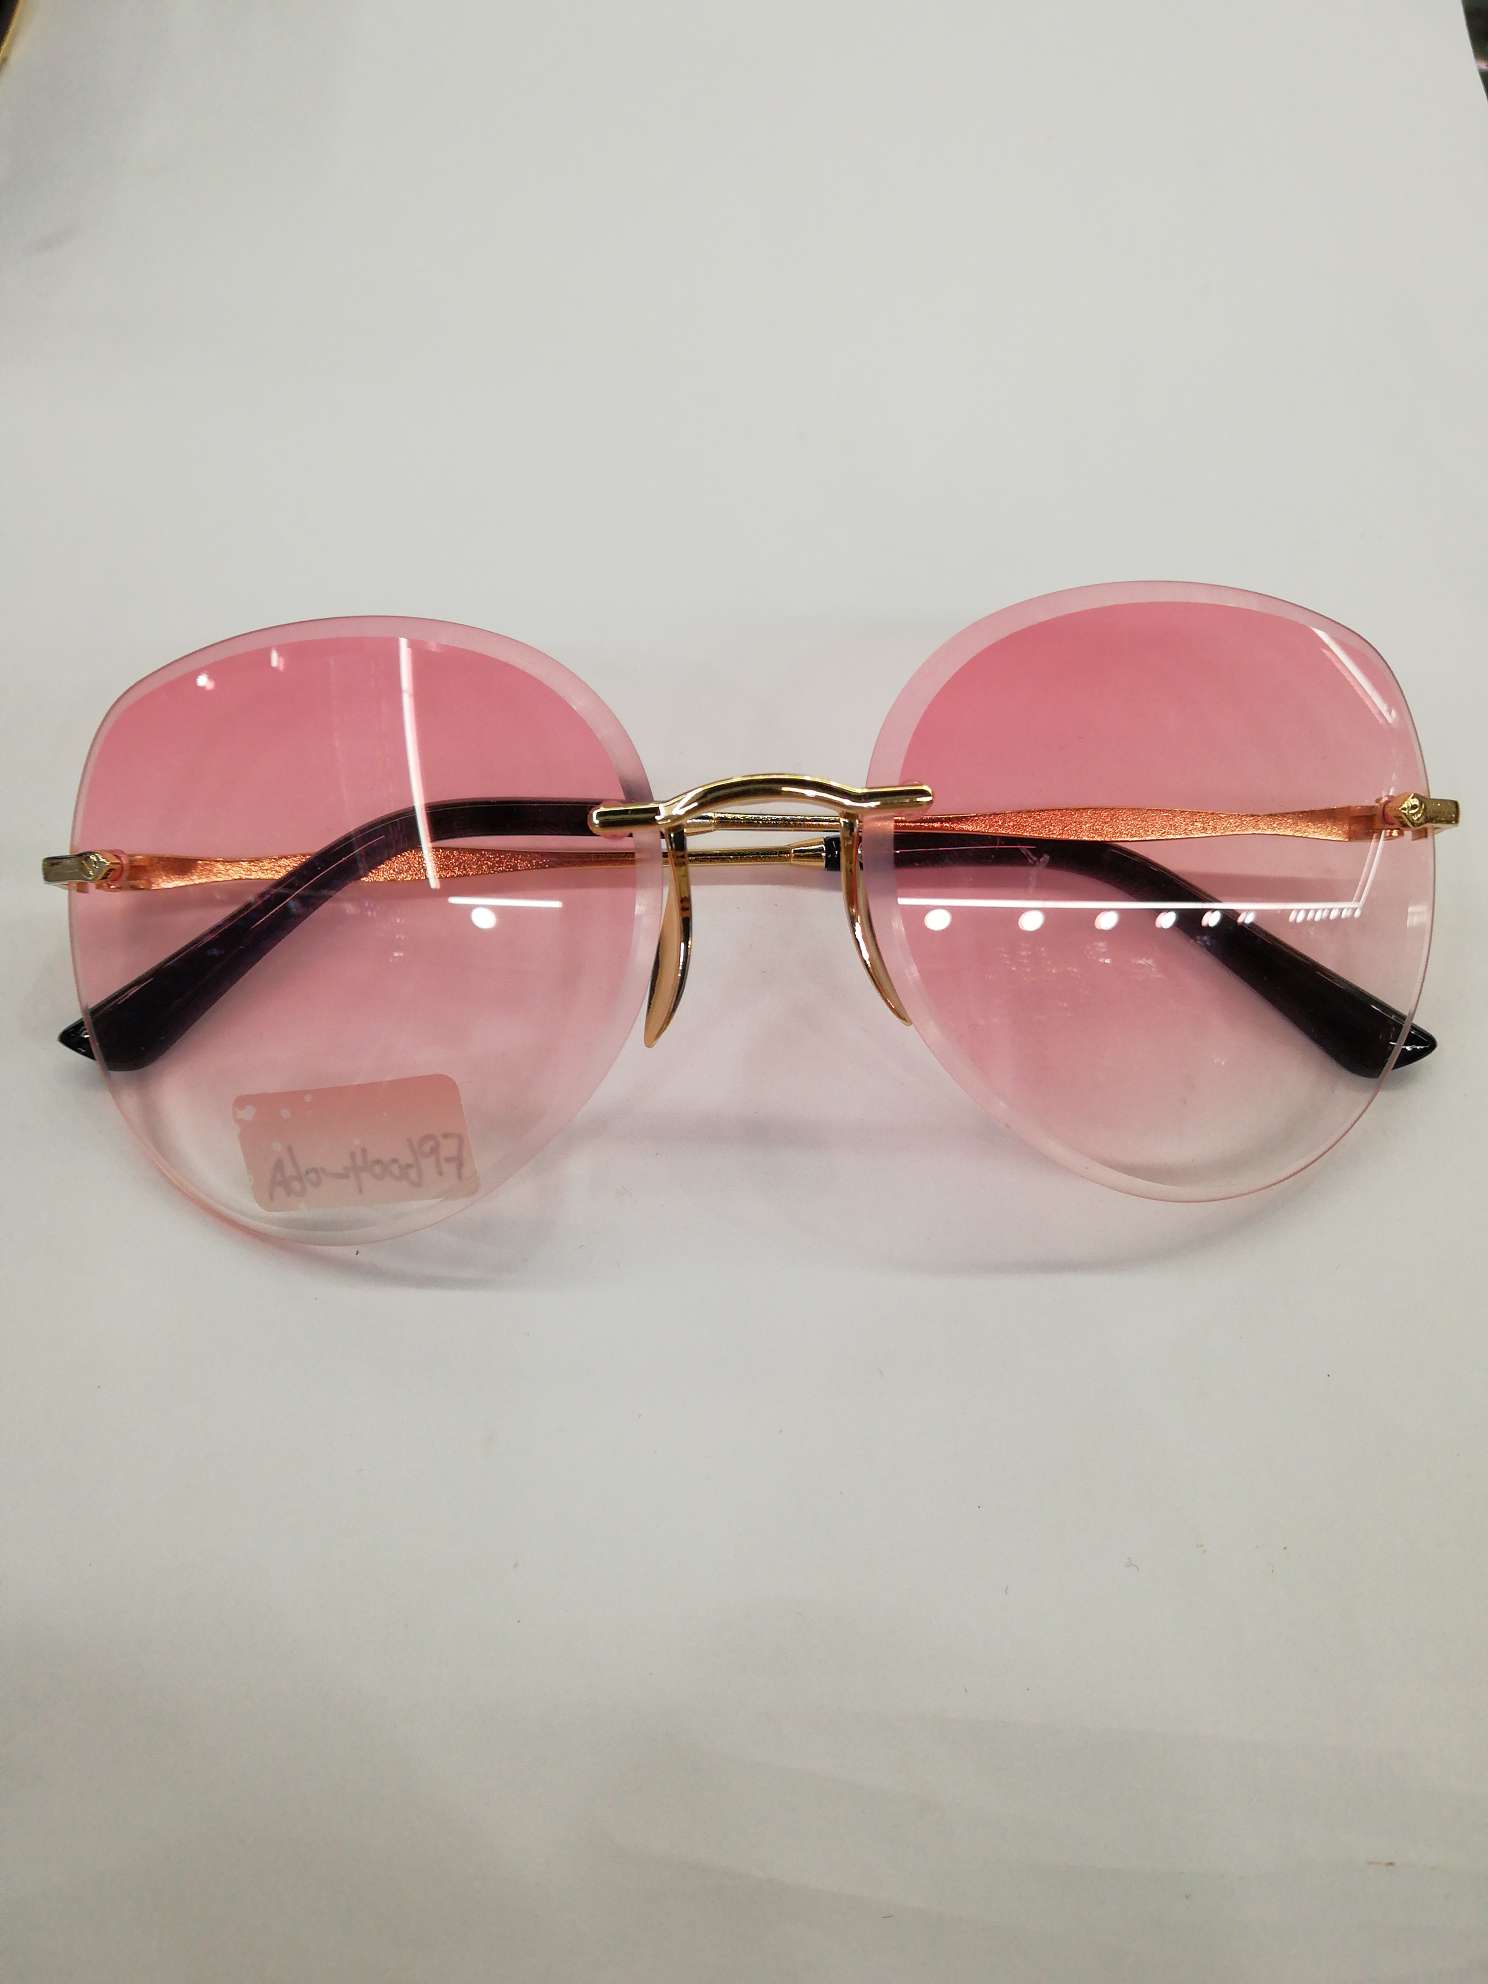 6004墨镜太阳镜男女可戴防紫外线保护眼睛时尚潮流